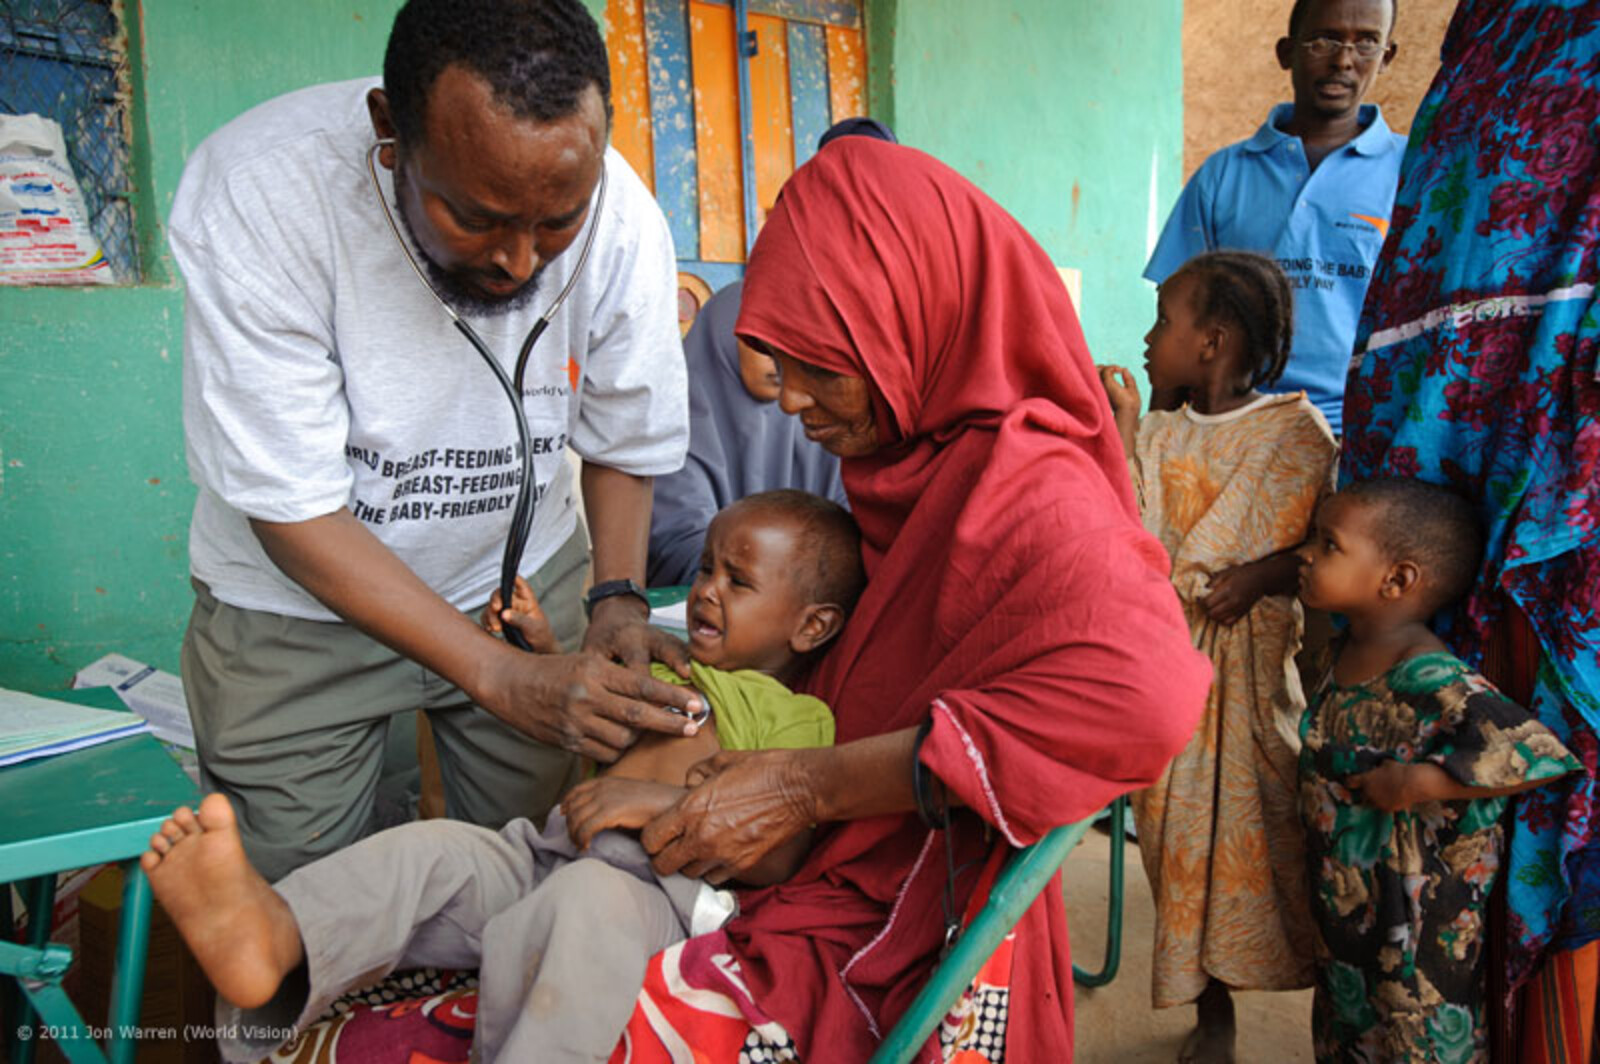 In den abgeschiedenen Dörfern Somalias, nahe der äthiopischen Grenze, führt World Vision jede Woche Gesundheitschecks bei den Kindern durch. Bislang kümmerte sich das Gesundheitssystem nicht um die Kinder aus diesen Dörfern. Nach sechs Monaten Arbeit kann